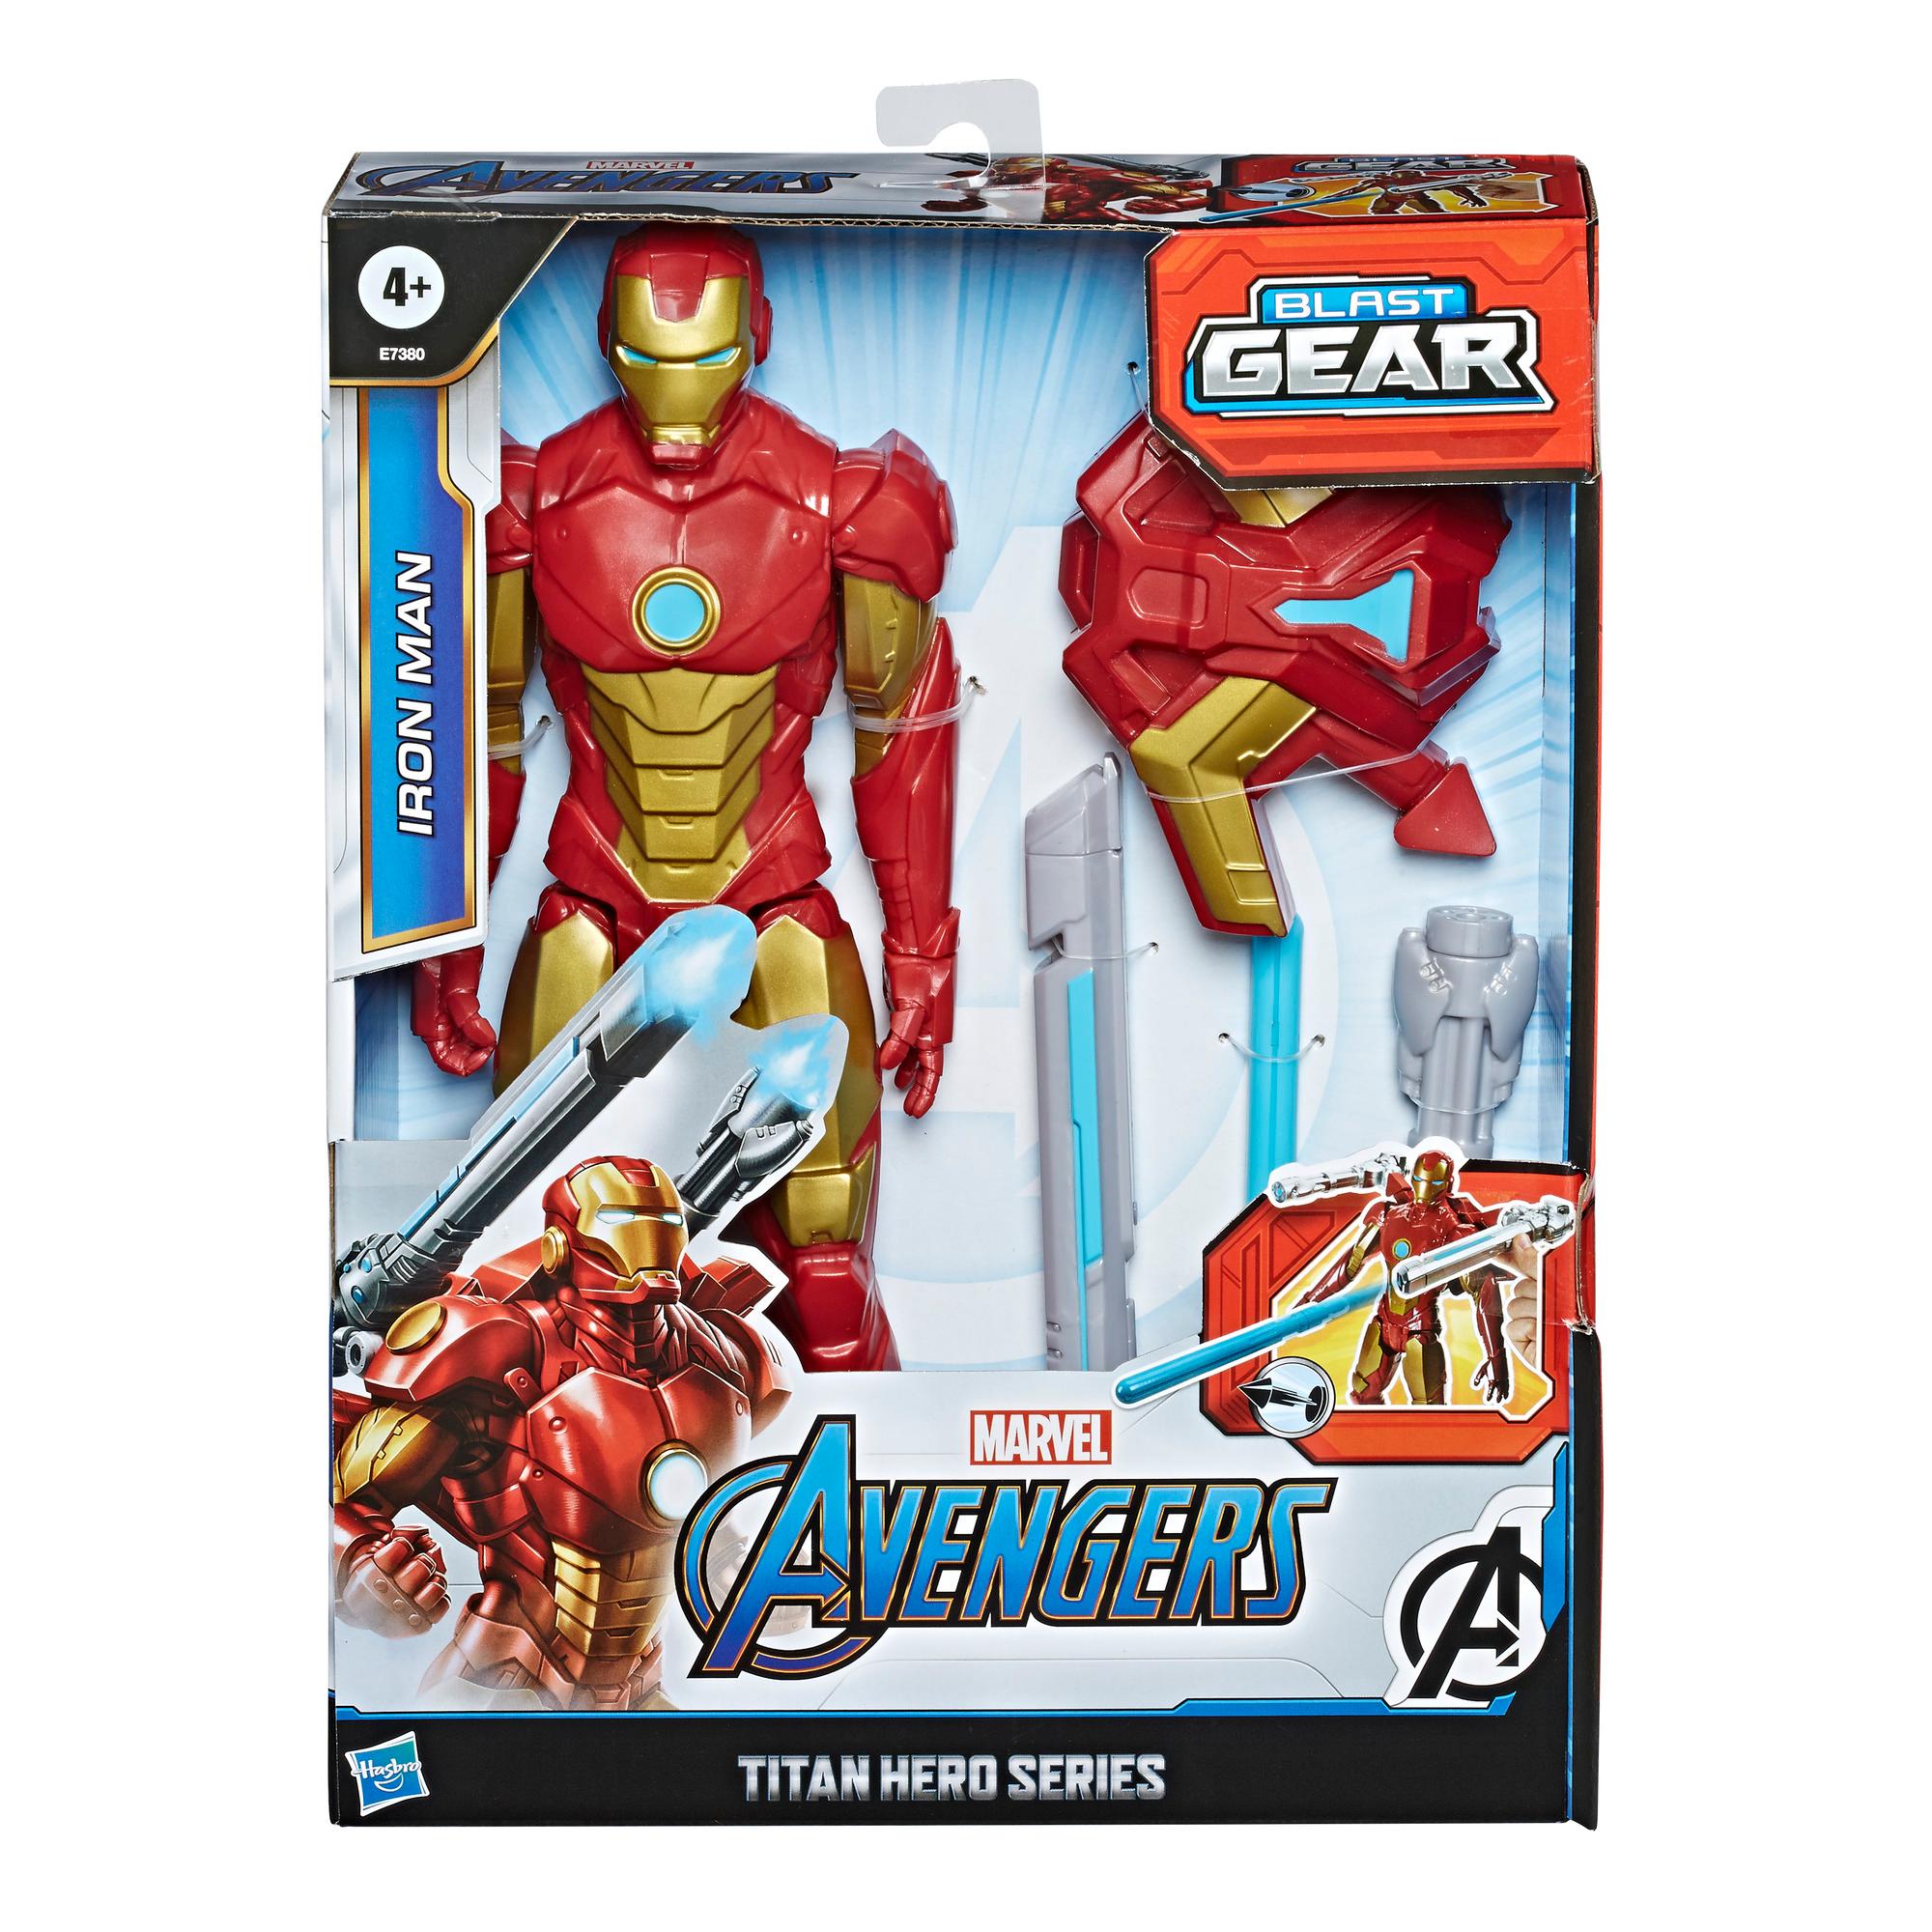 Marvel Avengers Titan Hero Series Blast Gear Iron Man Action 